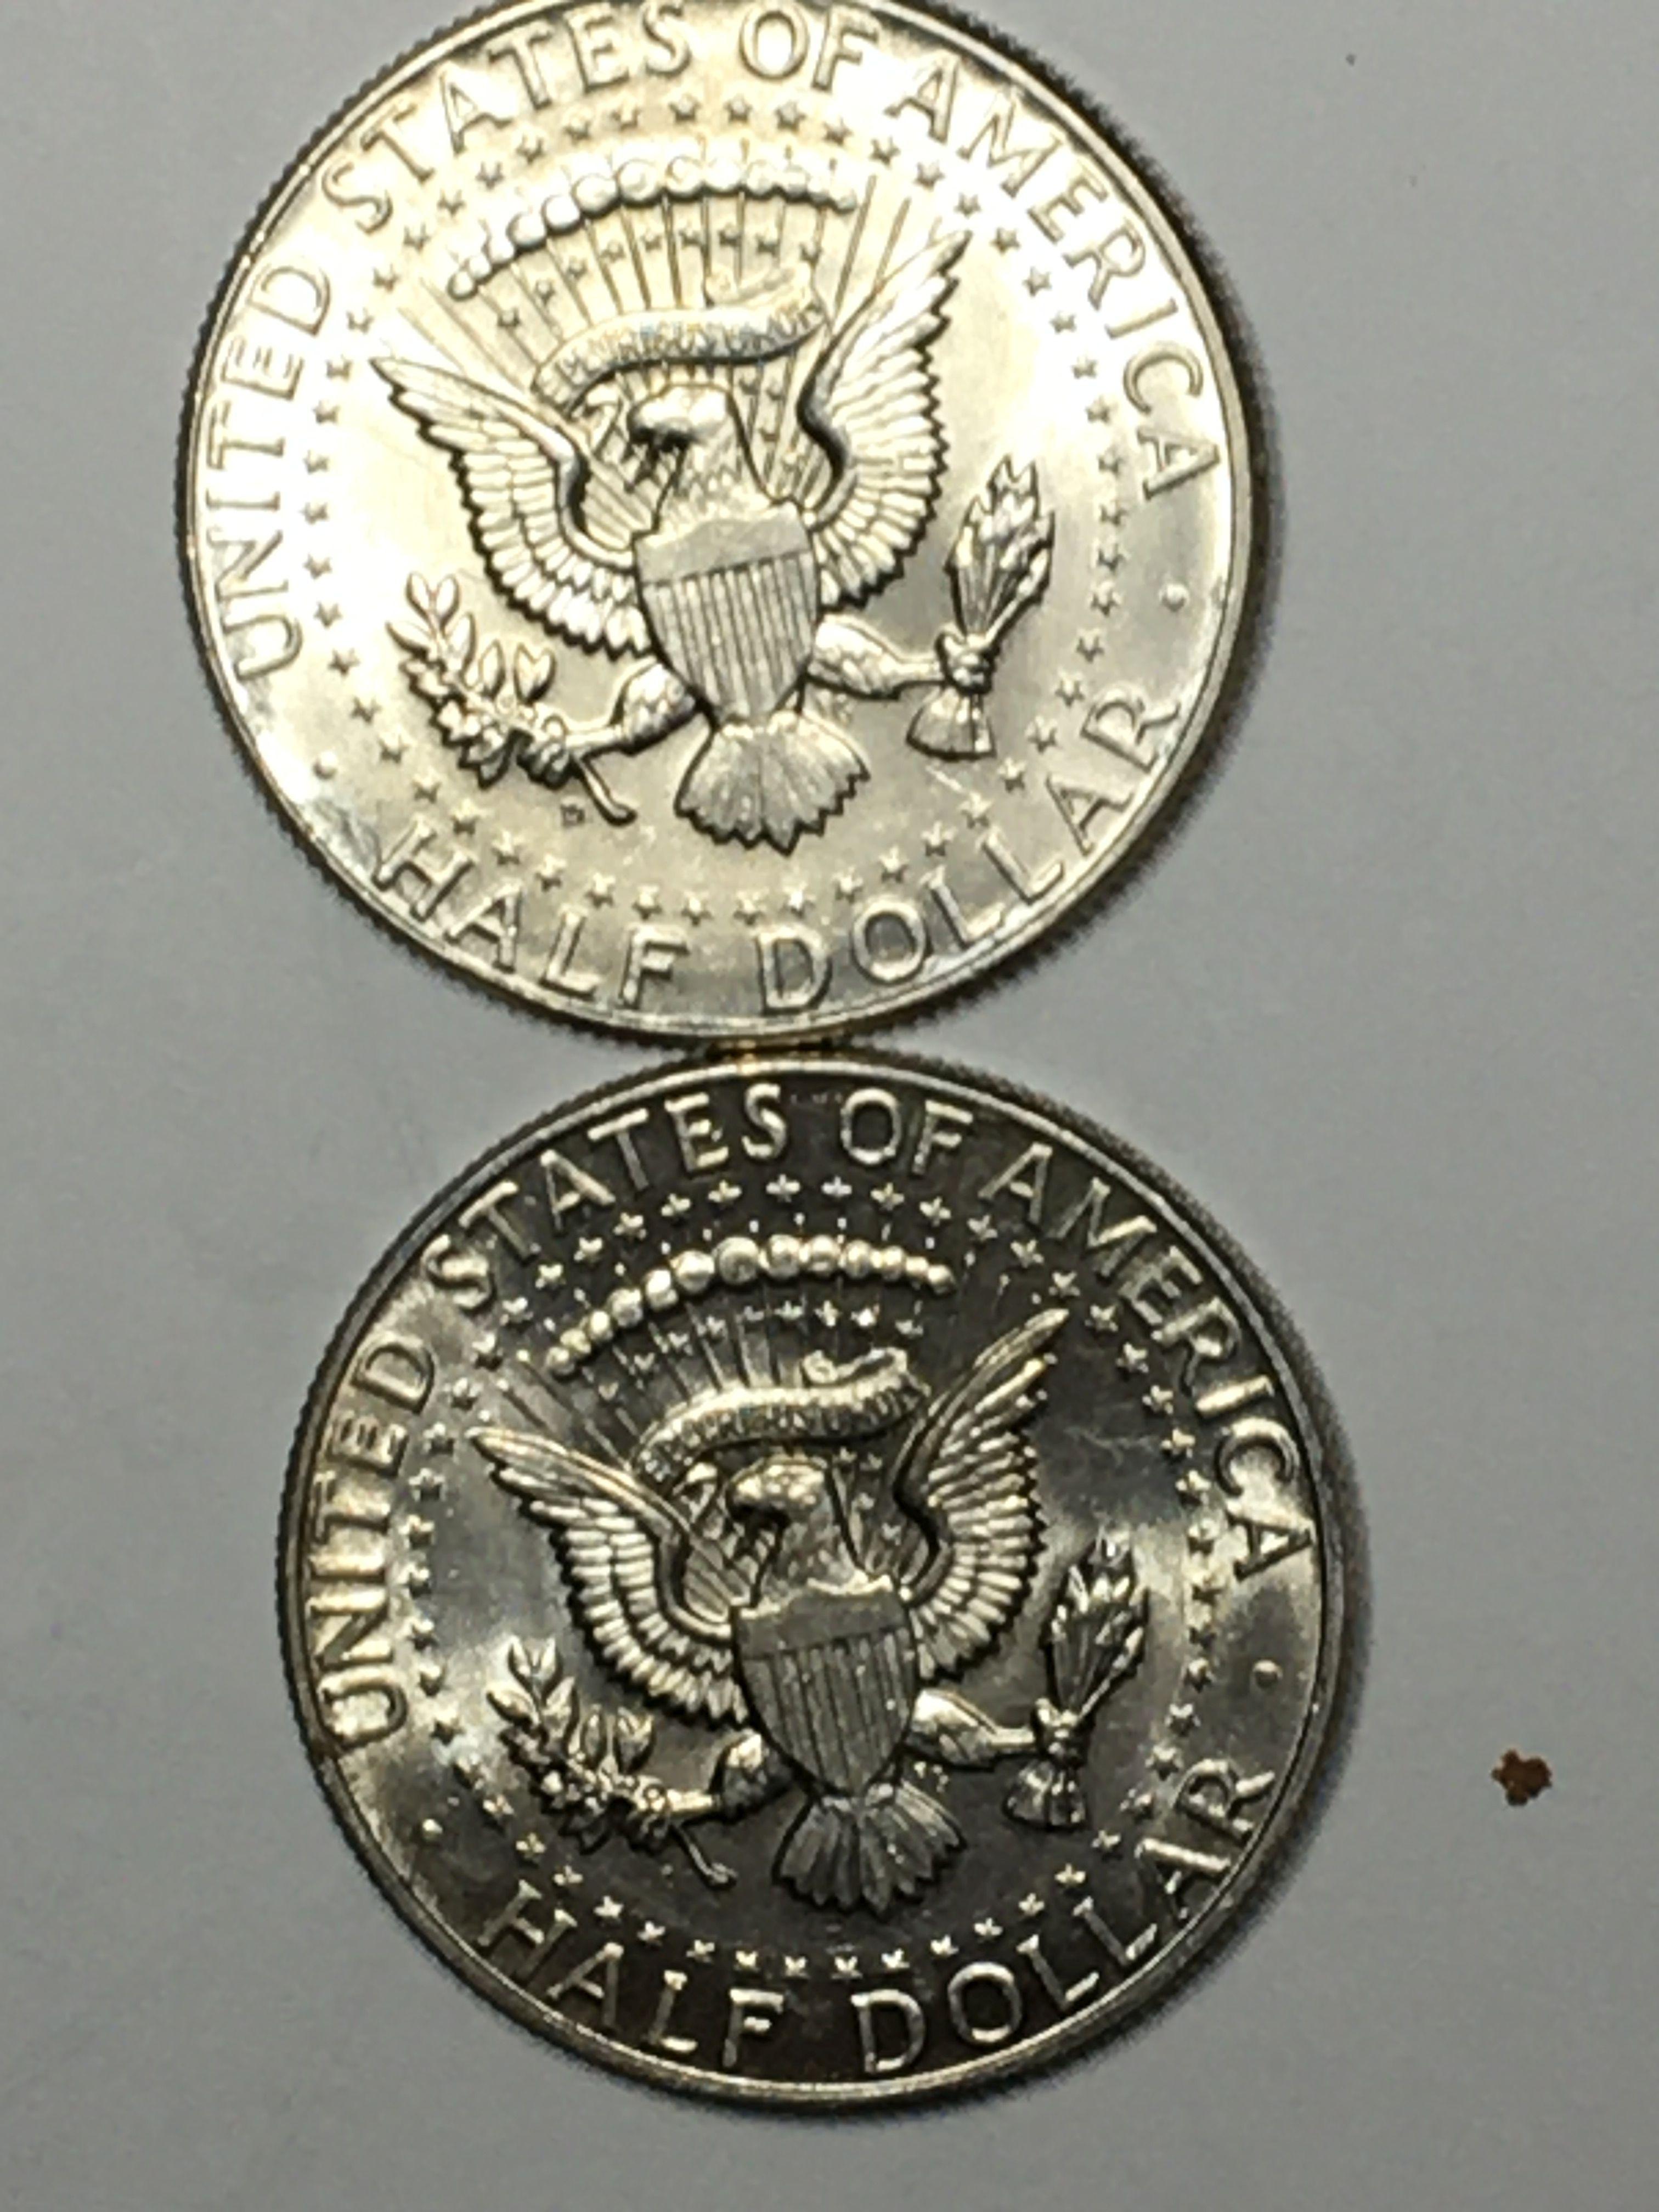 Kennedy Silver Half Dollar Lot 2 Coins Gem Blazers From Original Roll 1964 90%